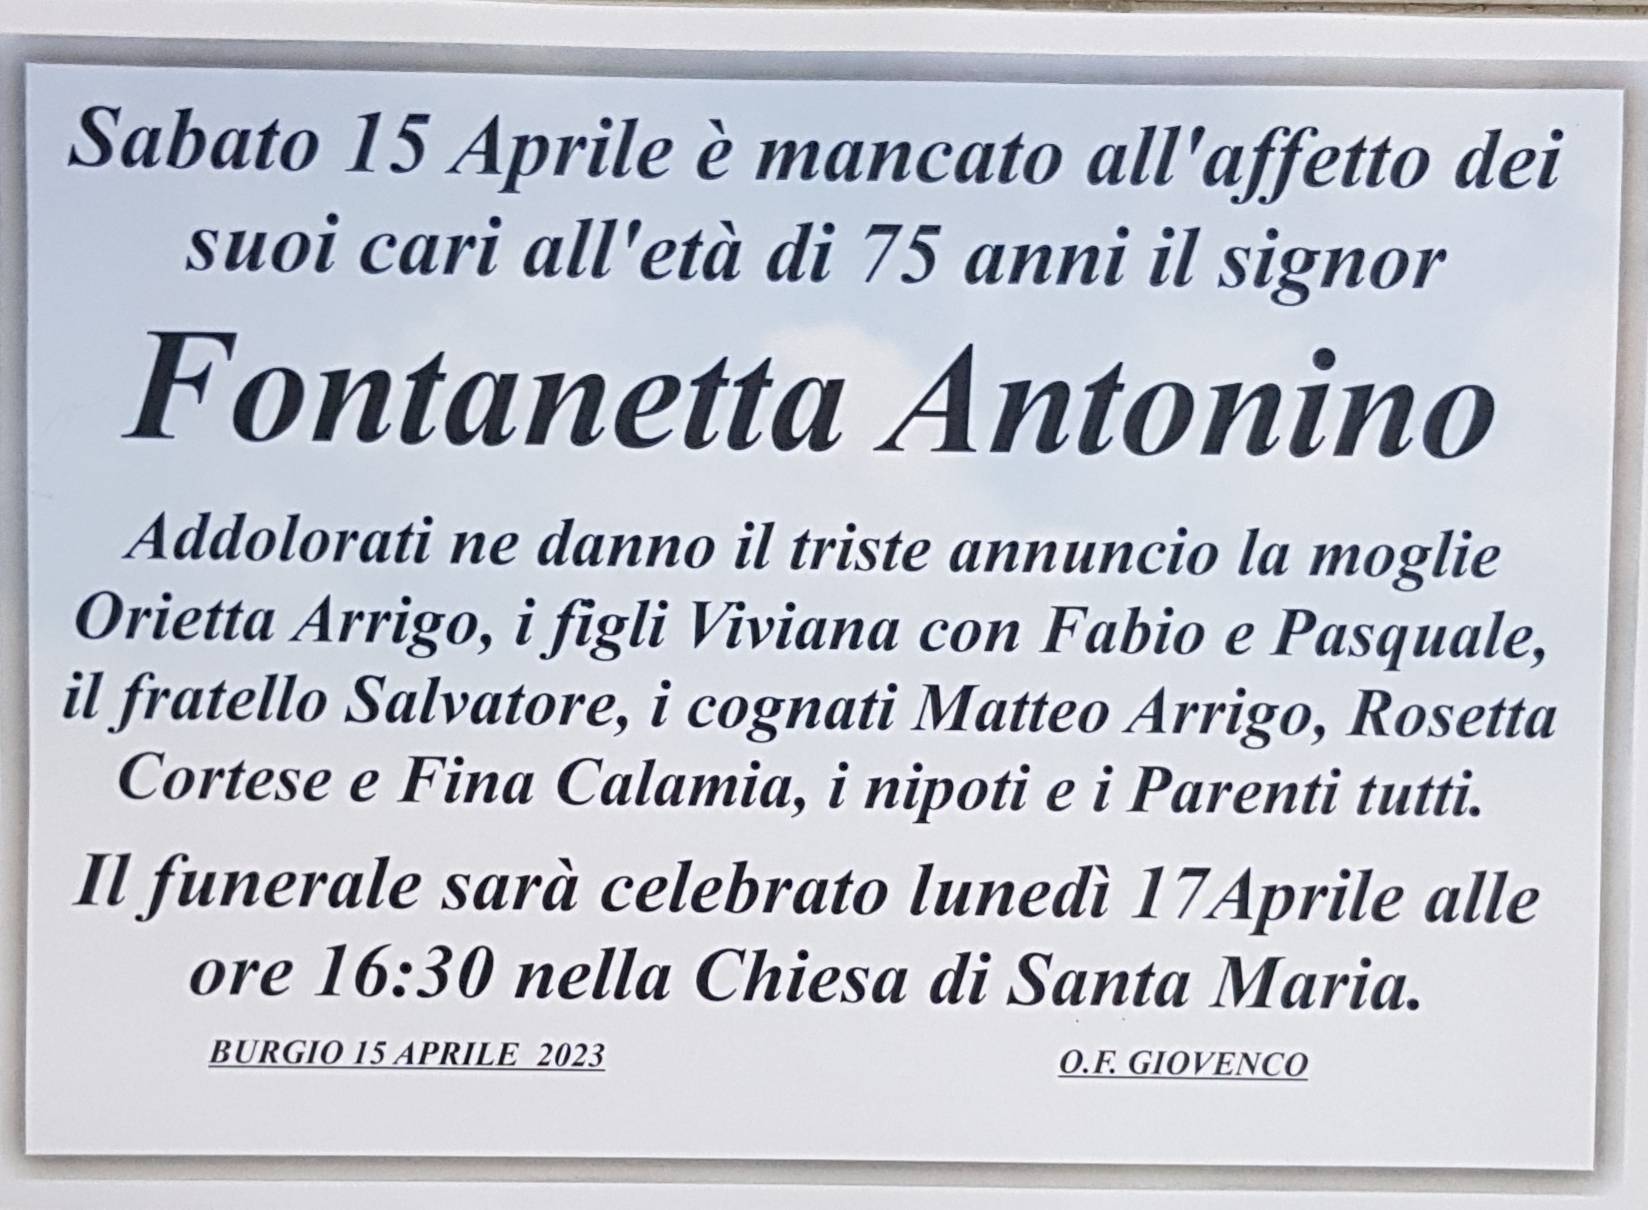 Antonino Fontanetta